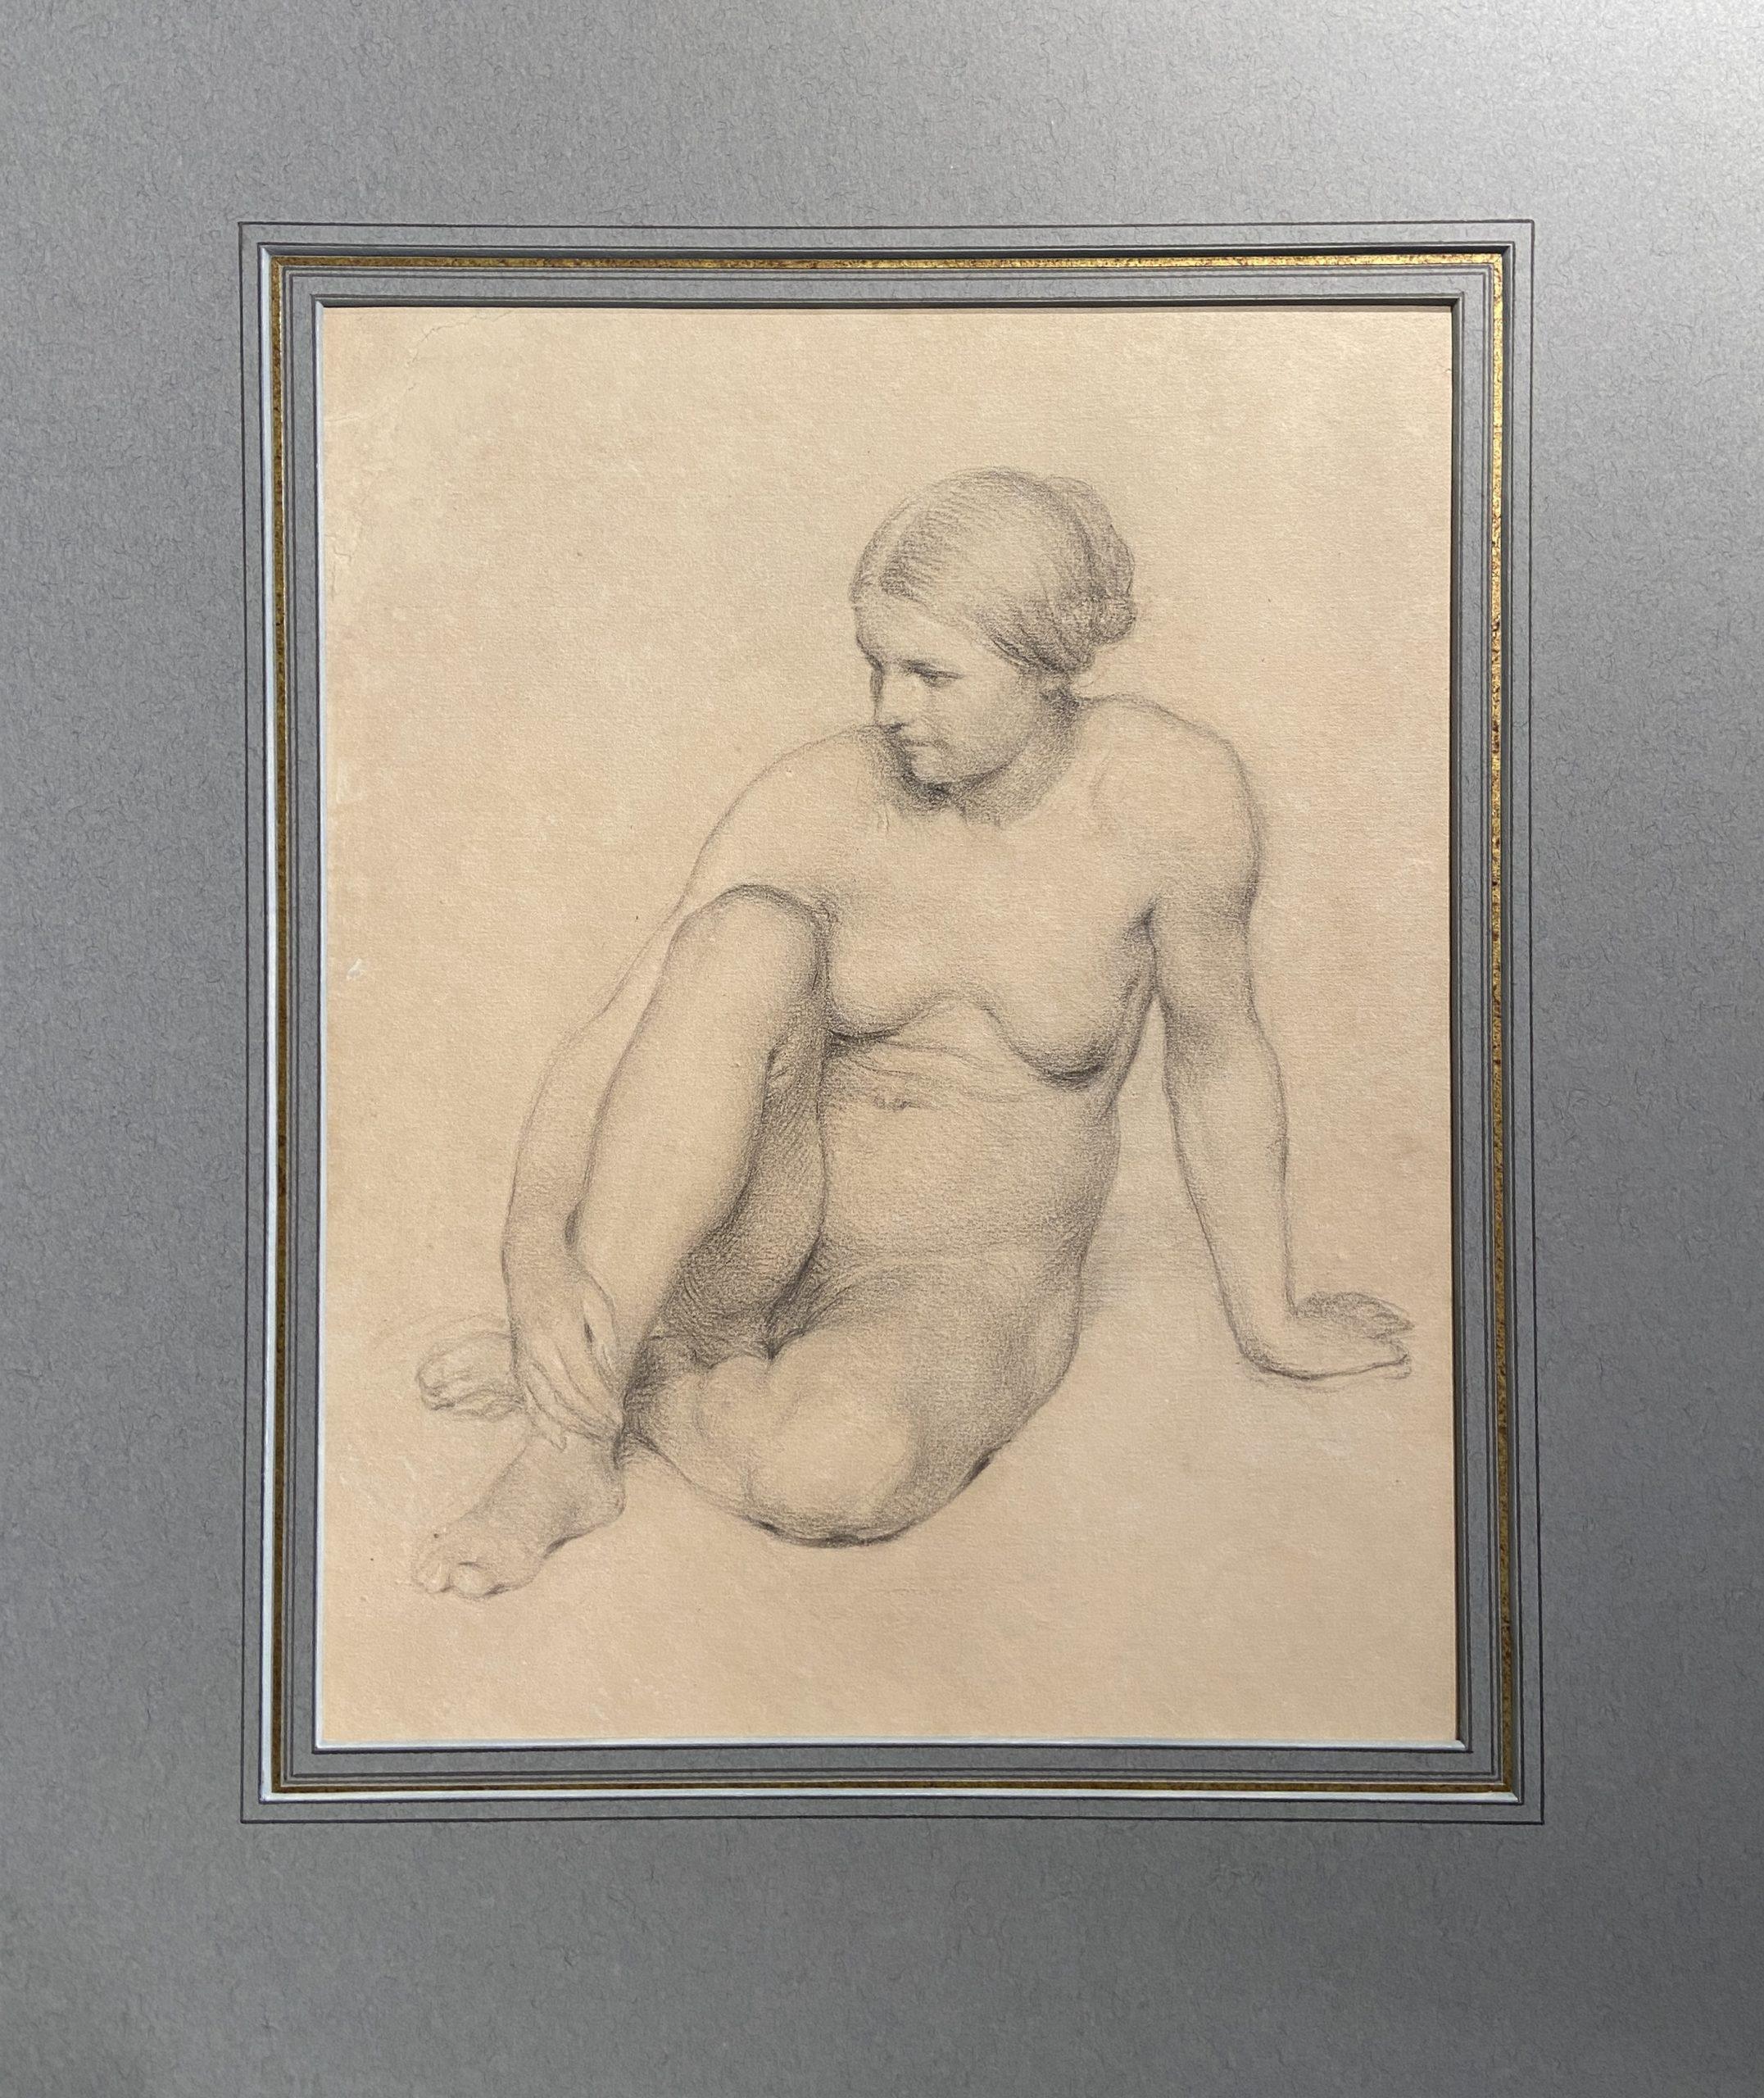 Studie einer sitzenden Frau, Graphitzeichnung, Französische Schule des 19. Jahrhunderts – Art von 19th century French School